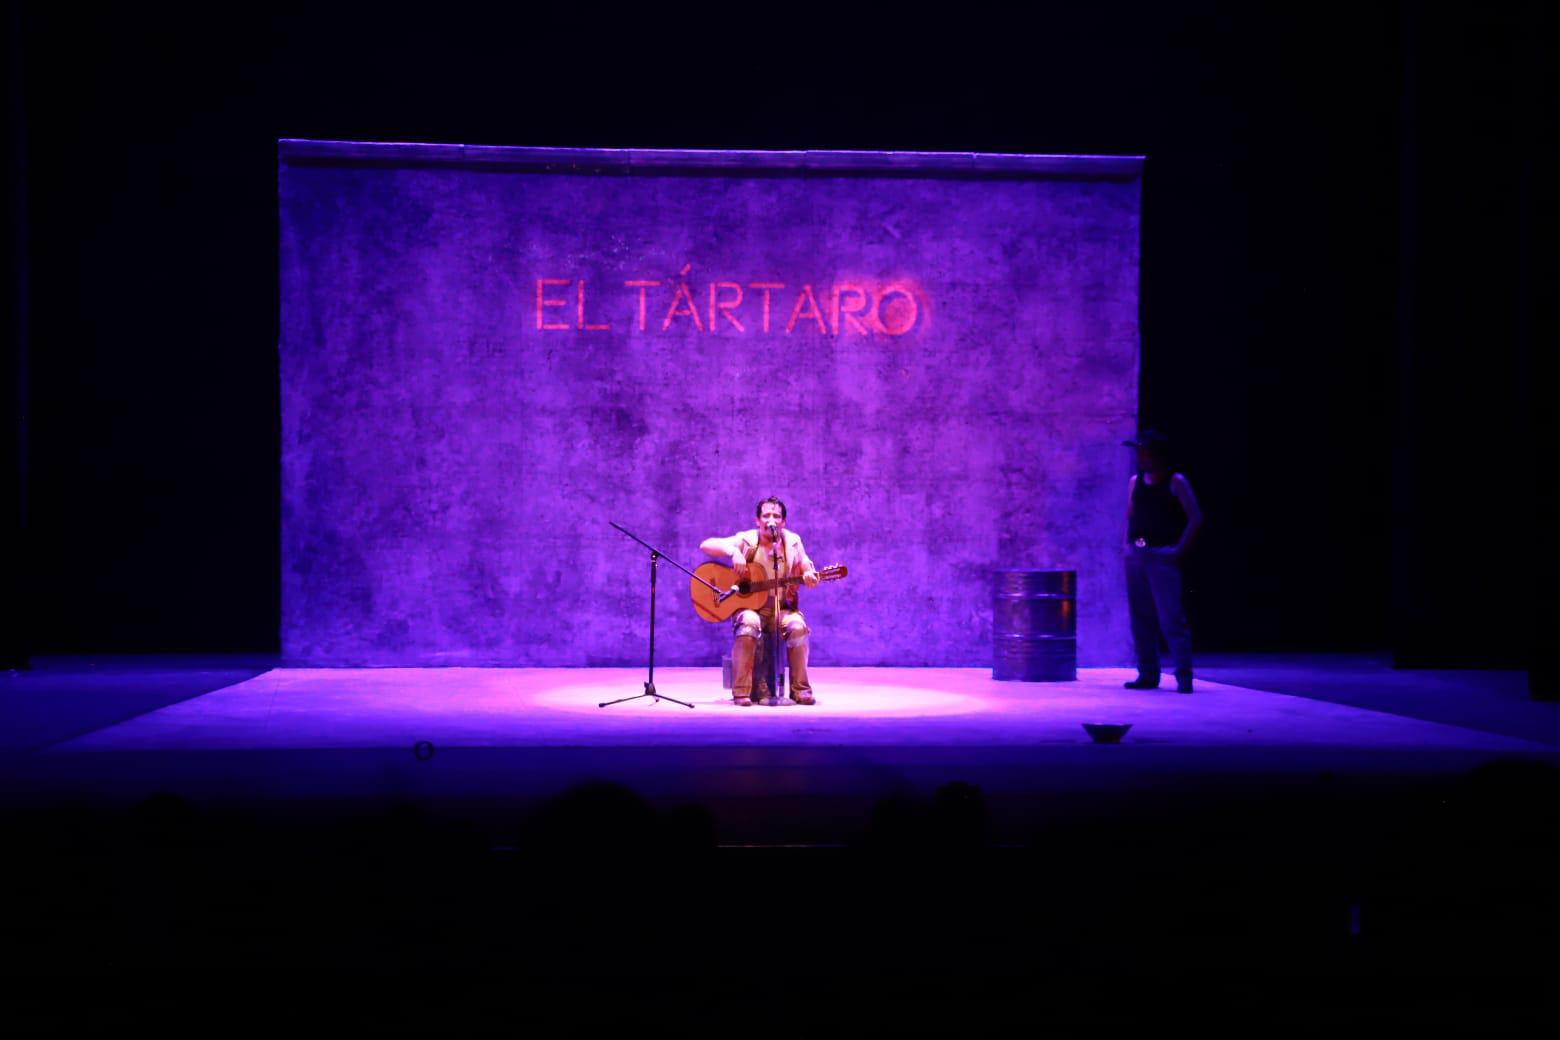 $!Tártaro una historia de drama fue bien presentada en el escenario del Teatro Ángela Peralta.